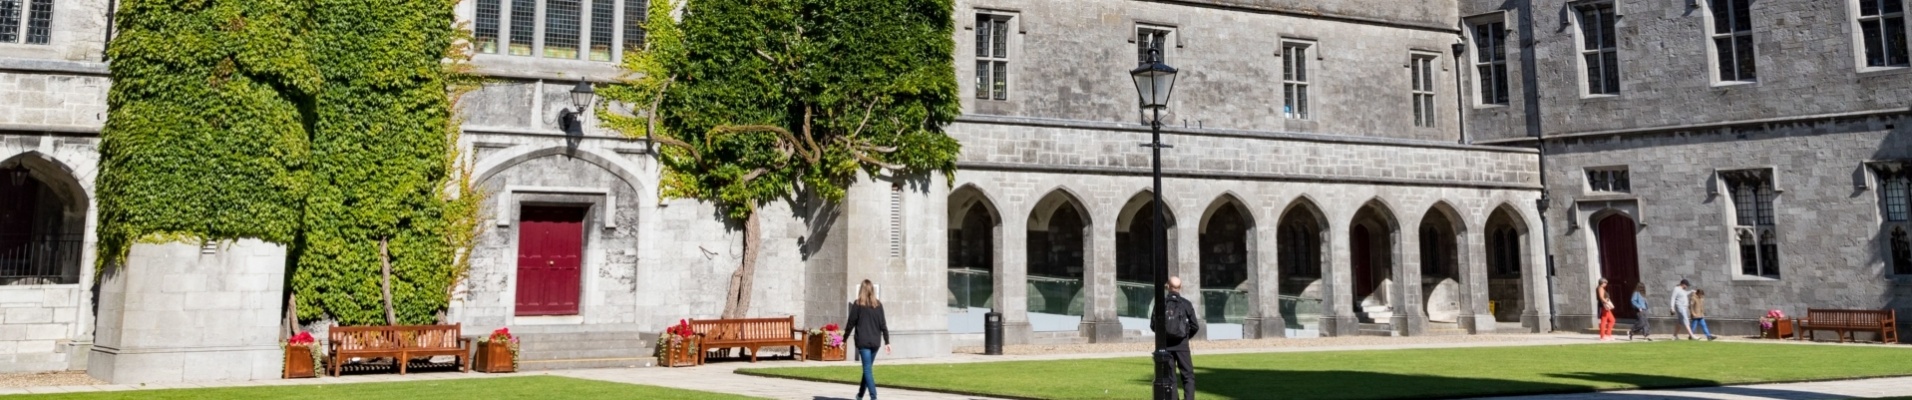 Université de Galway, Irlande